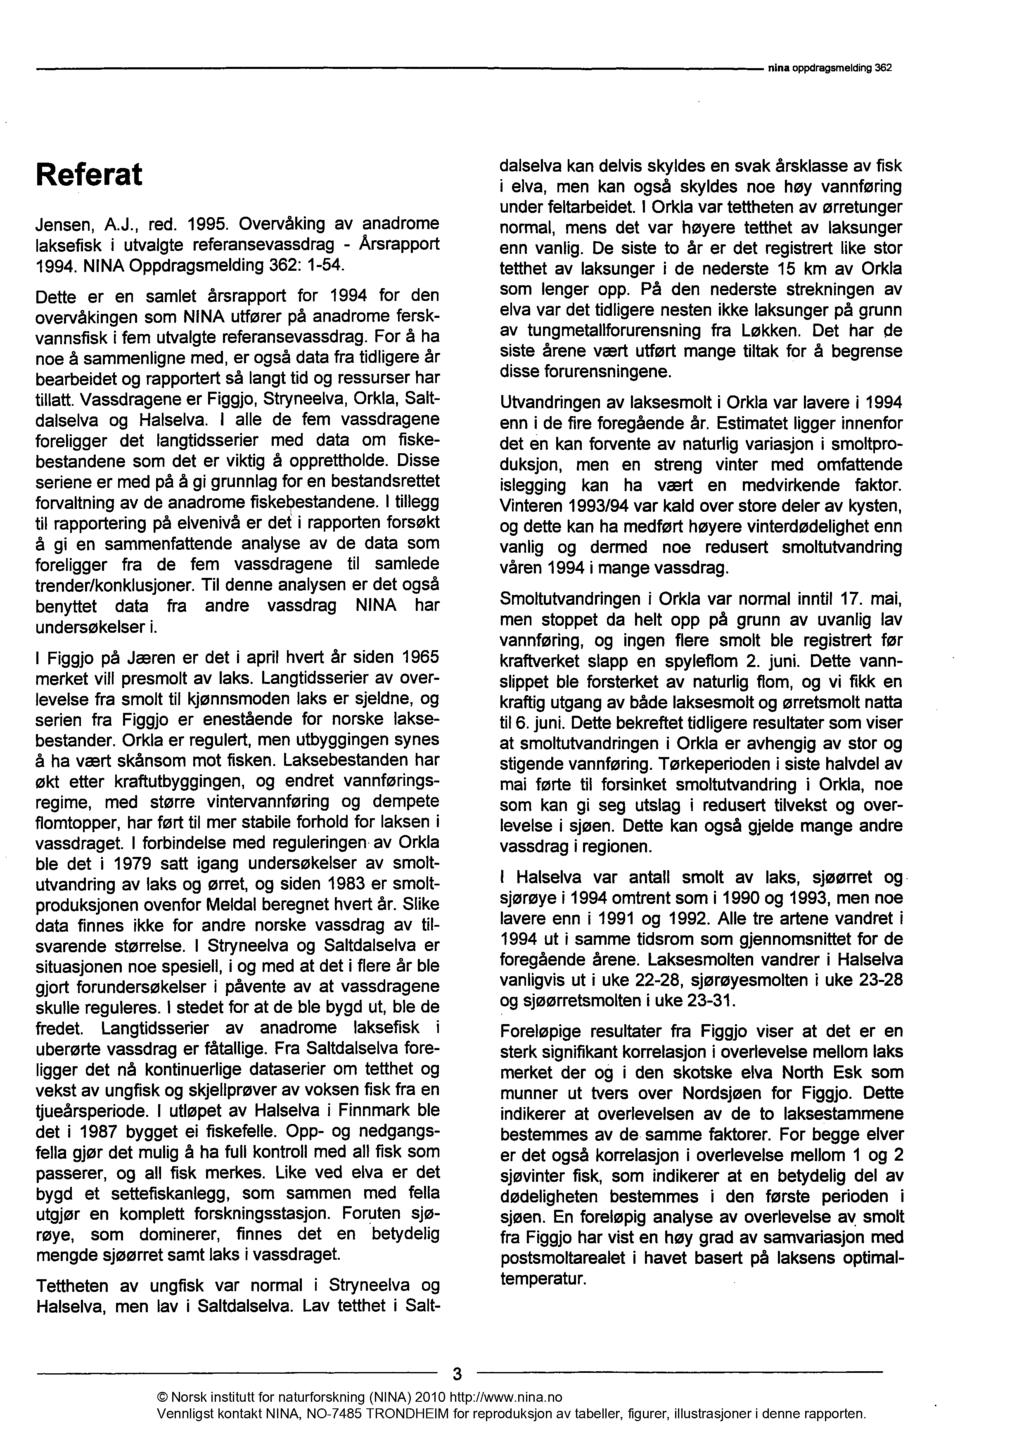 Referat Jensen, A.J., red. 1995. Overvåking av anadrome laksefisk i utvalgte referansevassdrag - Årsrapport 1994. NINA Oppdragsmelding 362: 1-54.